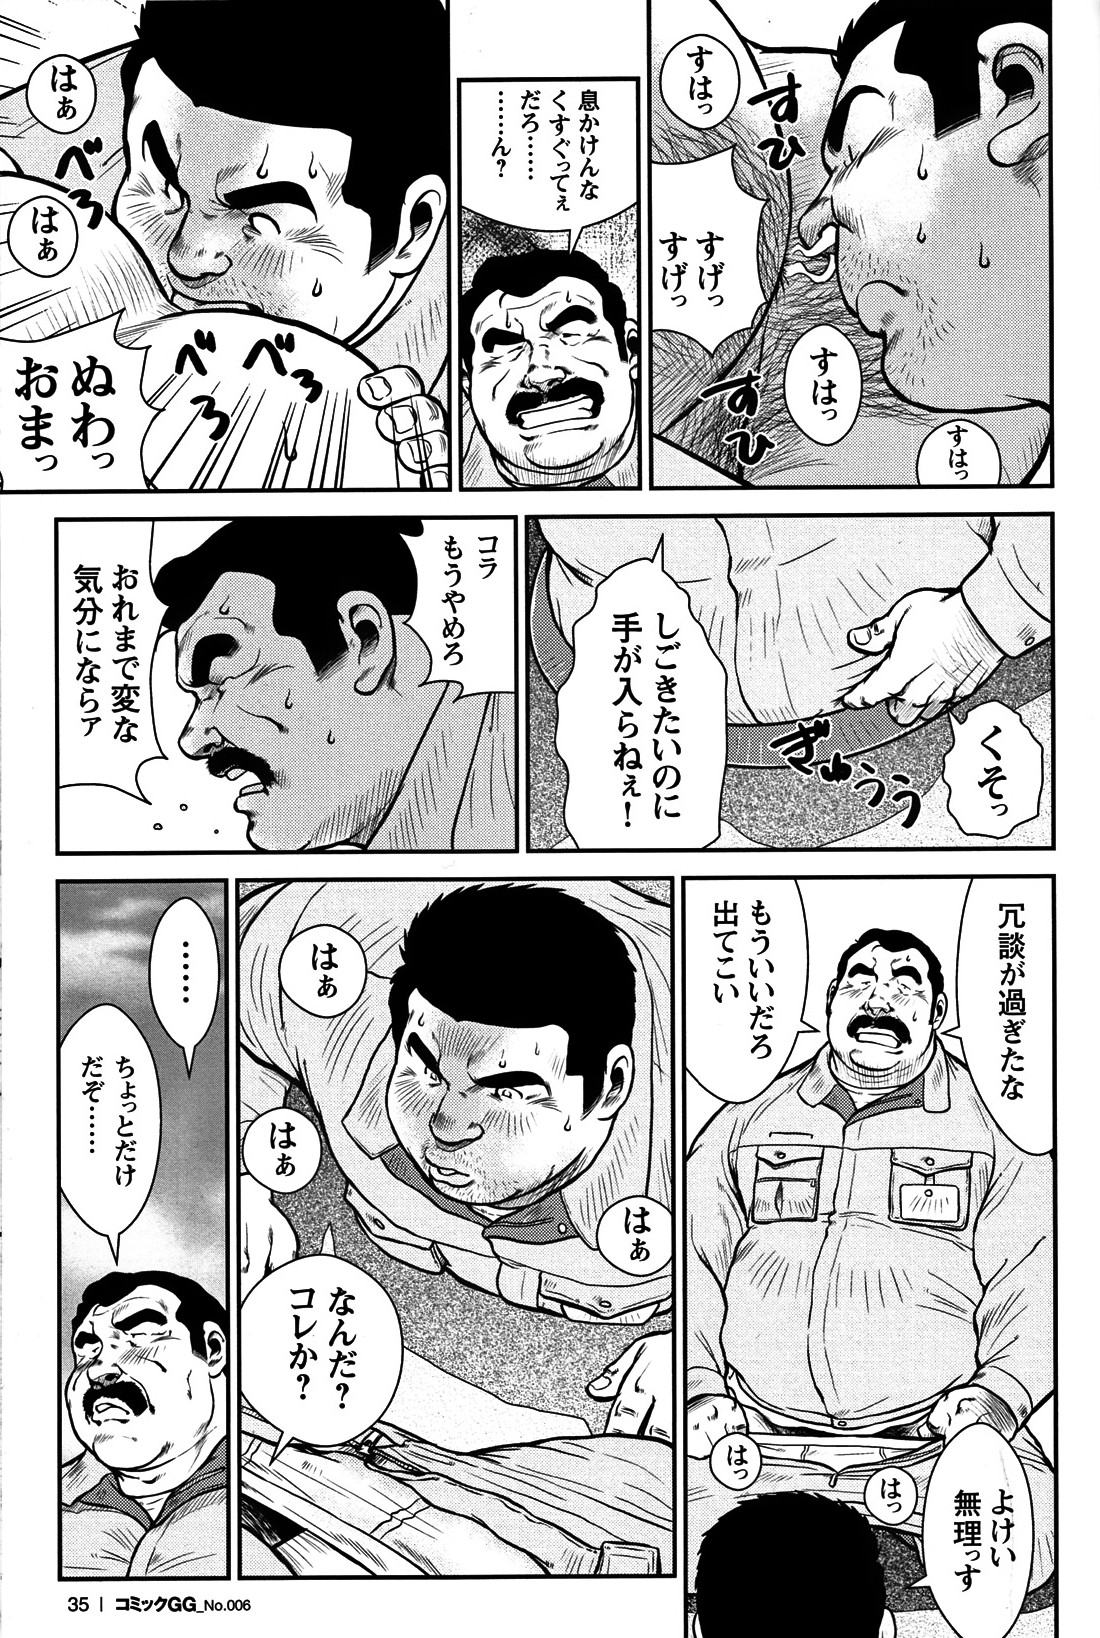 コミックG.G. No.06 肉体労働者